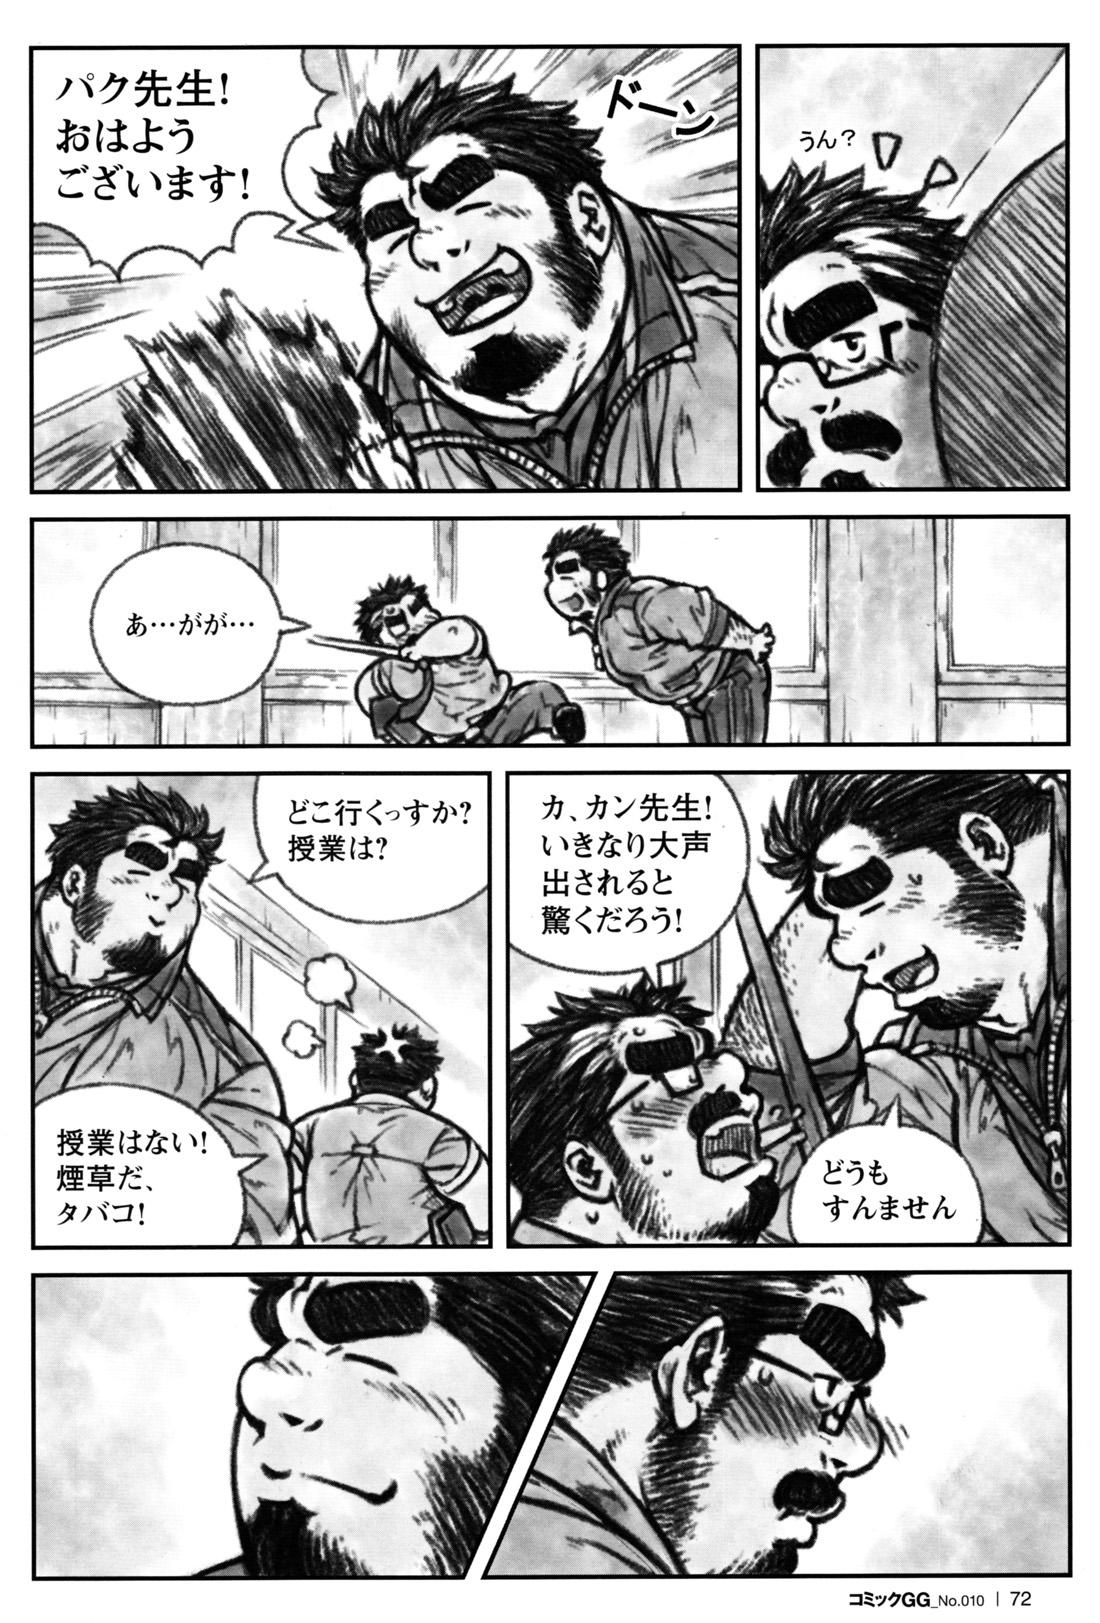 Phat Sensei no Himitsu Selfie - Page 2